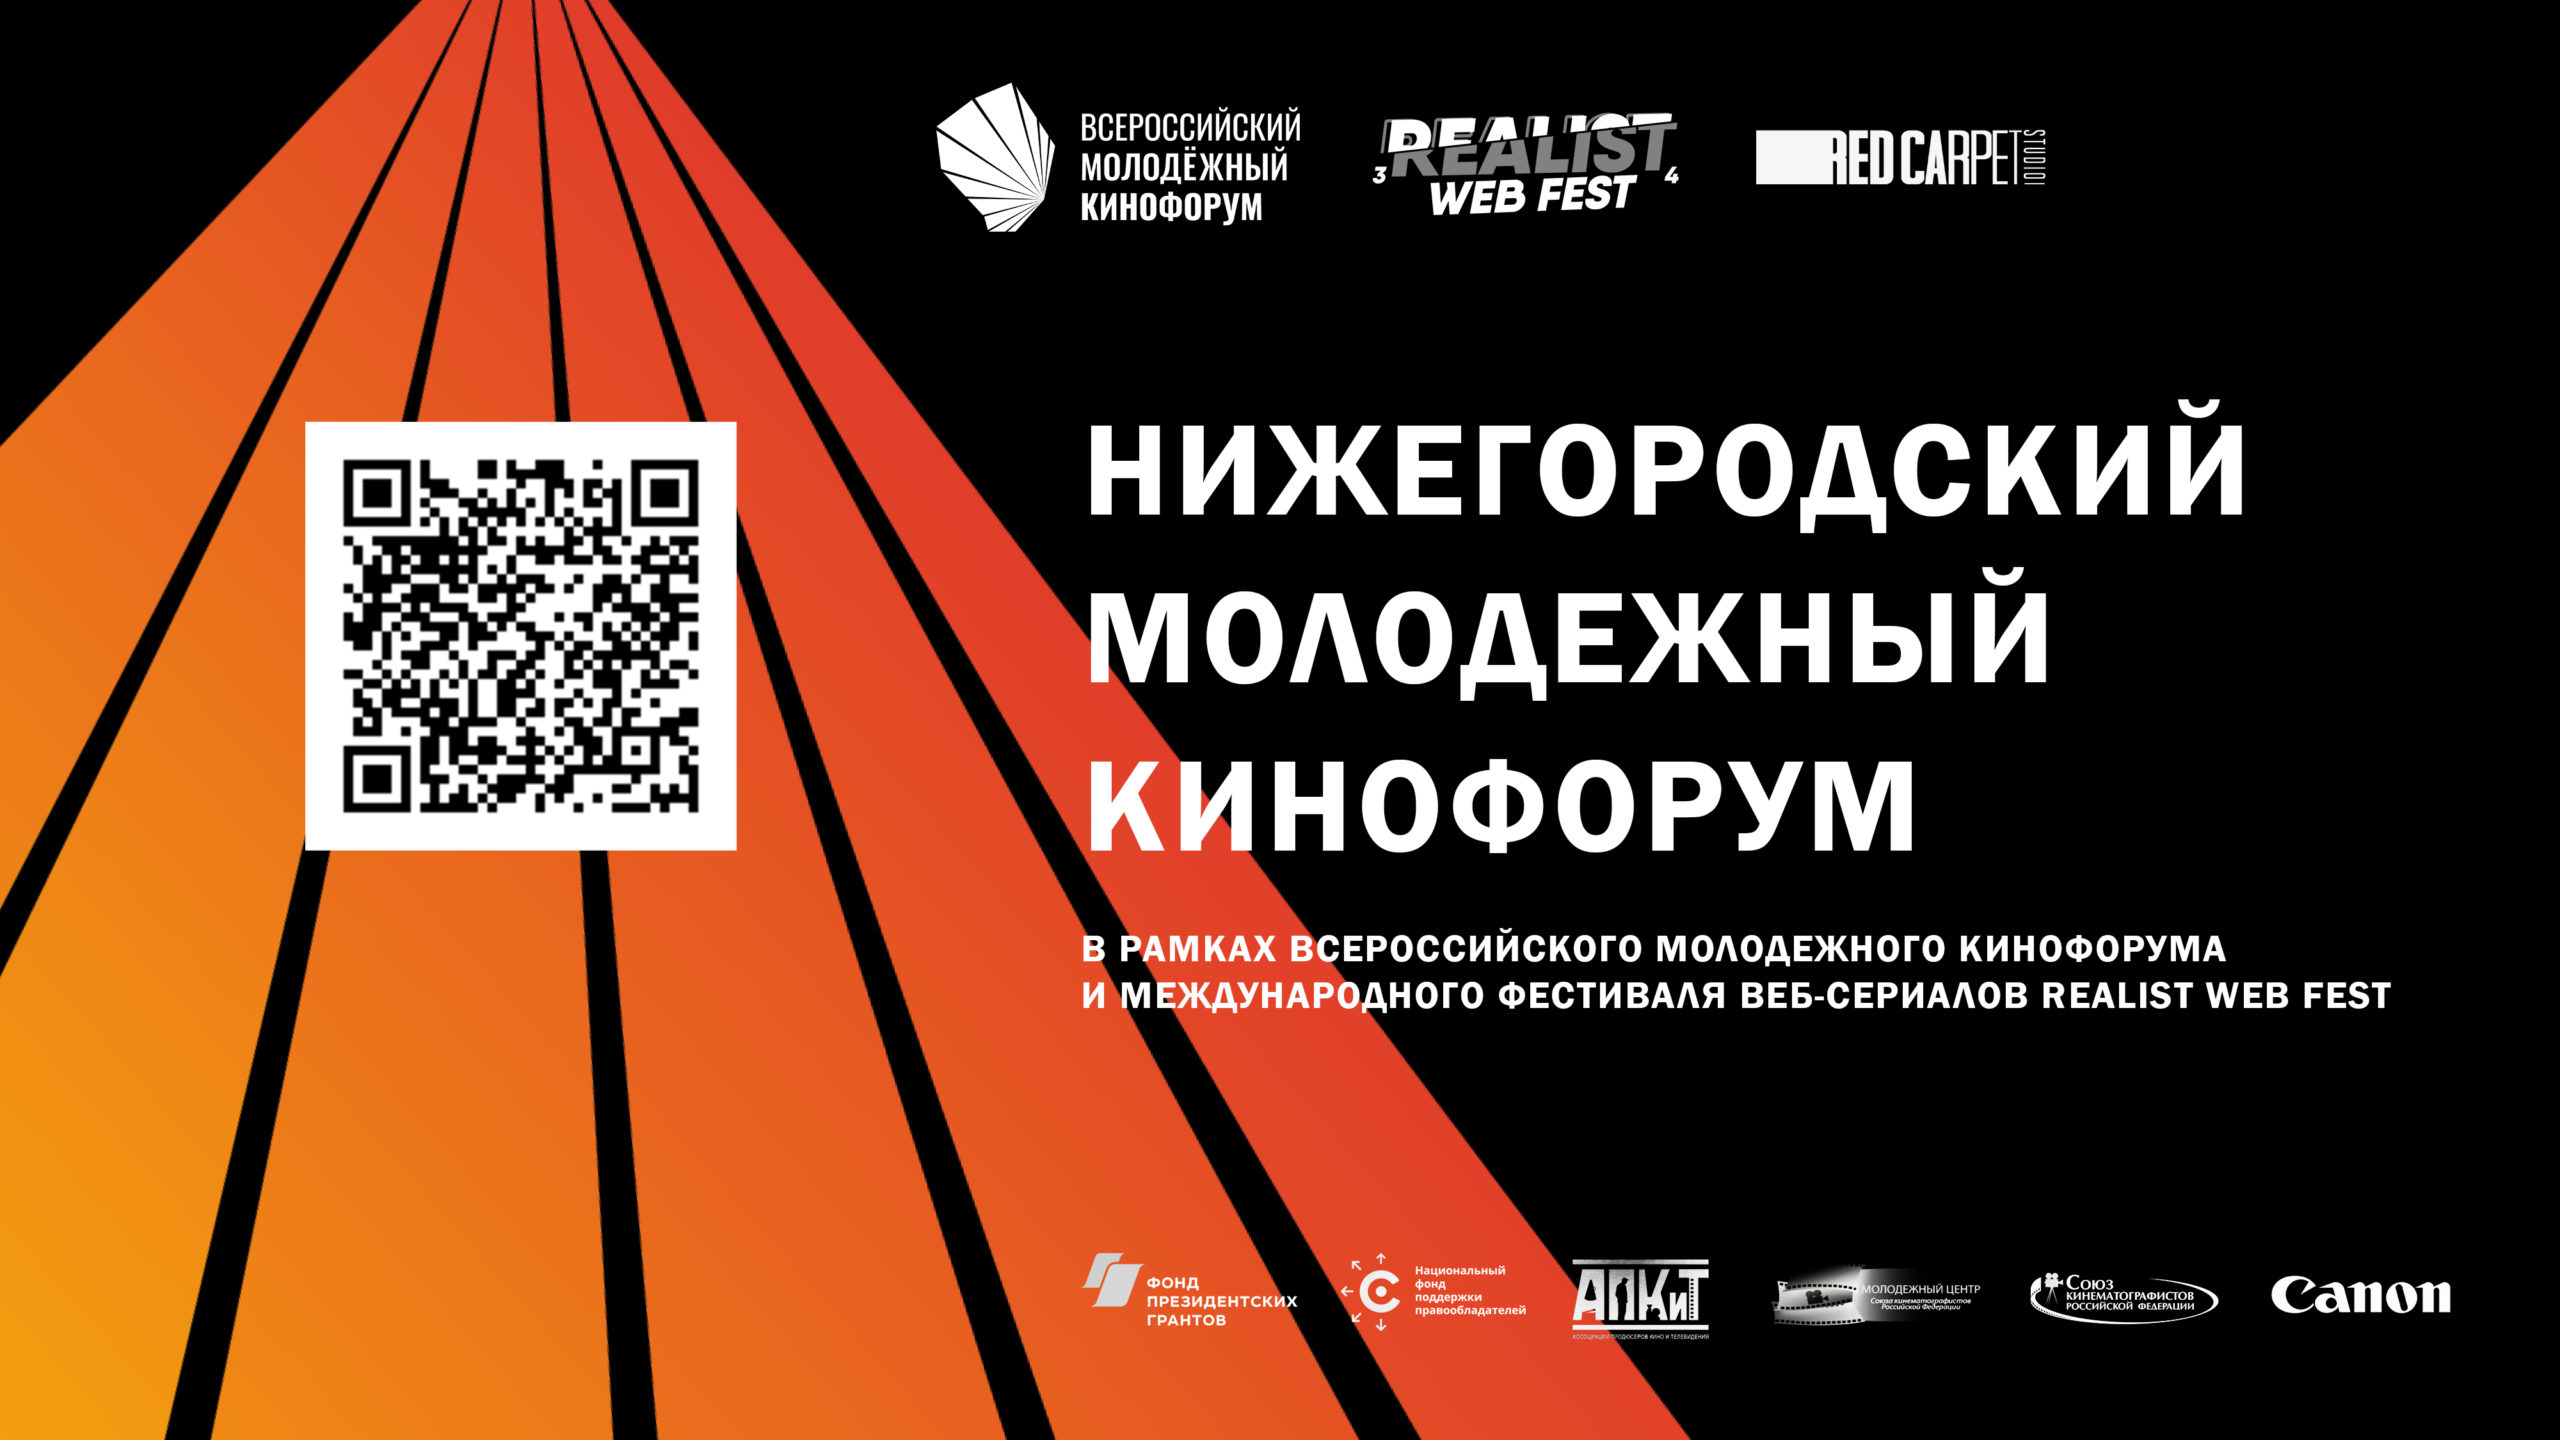 Питчинг дебютантов с призовым фондом 1 миллион рублей состоится в рамках Международного фестиваля веб-сериалов Realist Web Fest и Нижегородского молодежного кинофорума